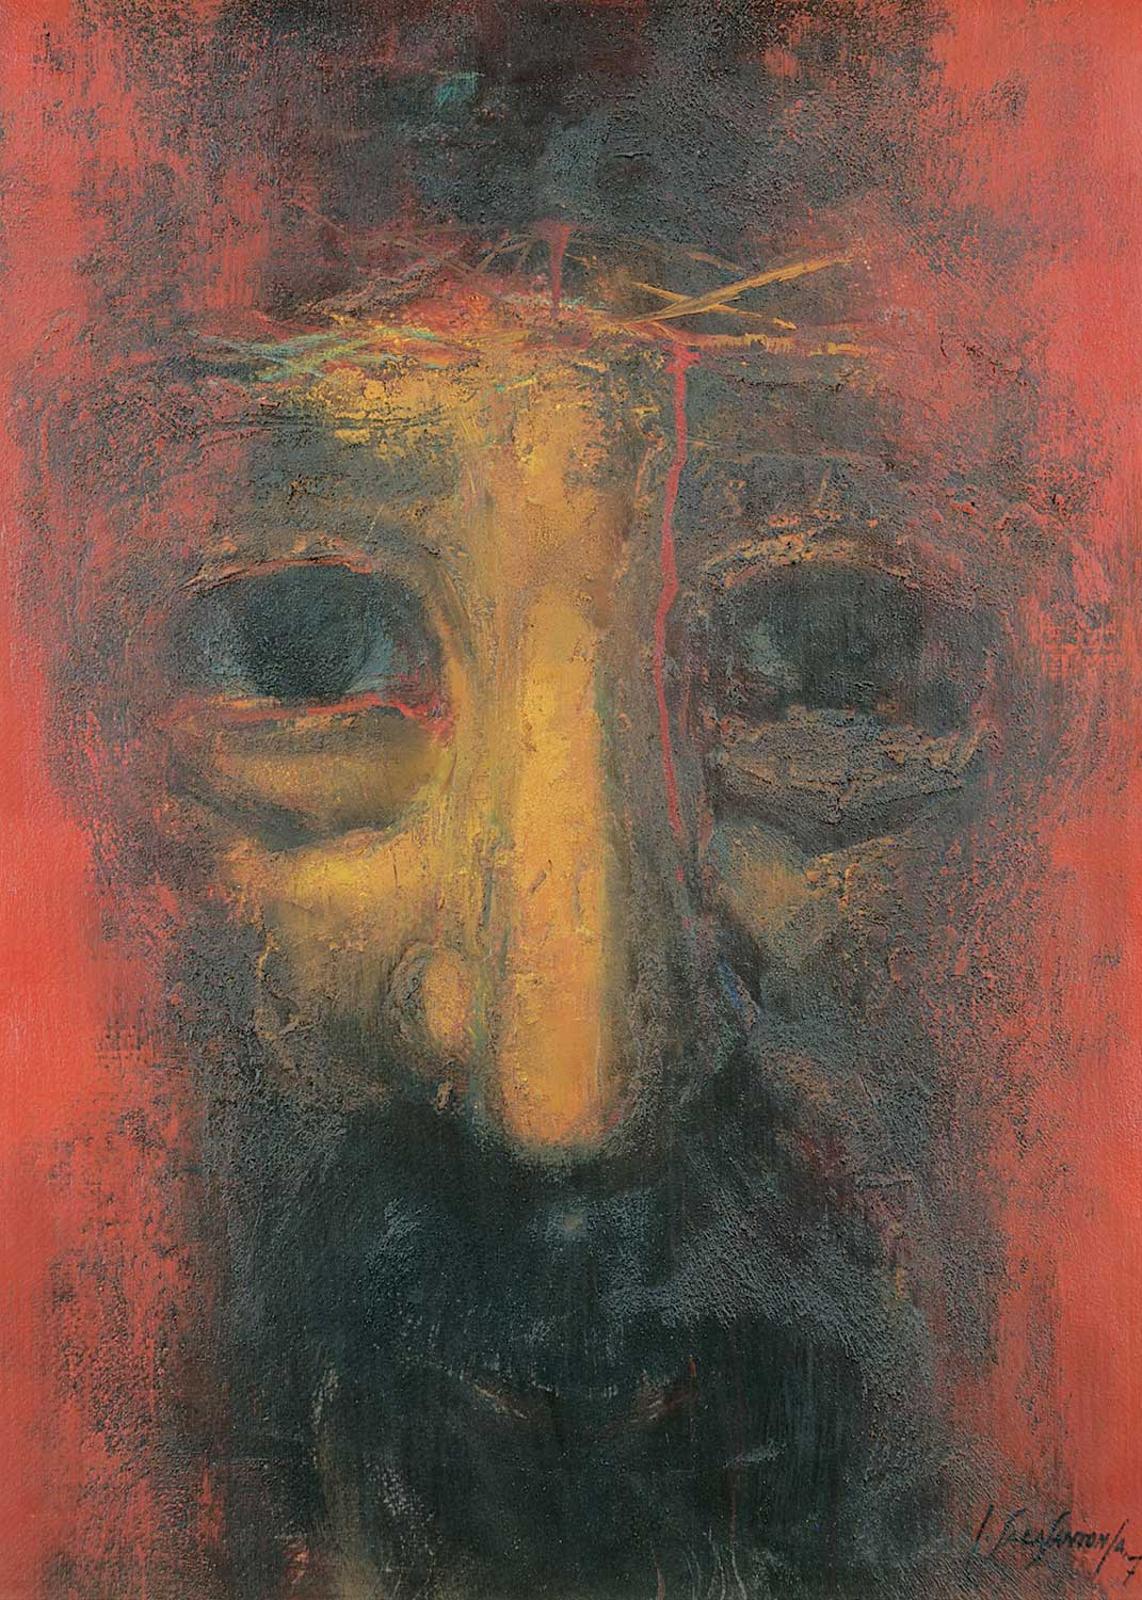 Juan Sala Santonja (1923-2010) - Untitled - Looking in the Mirror